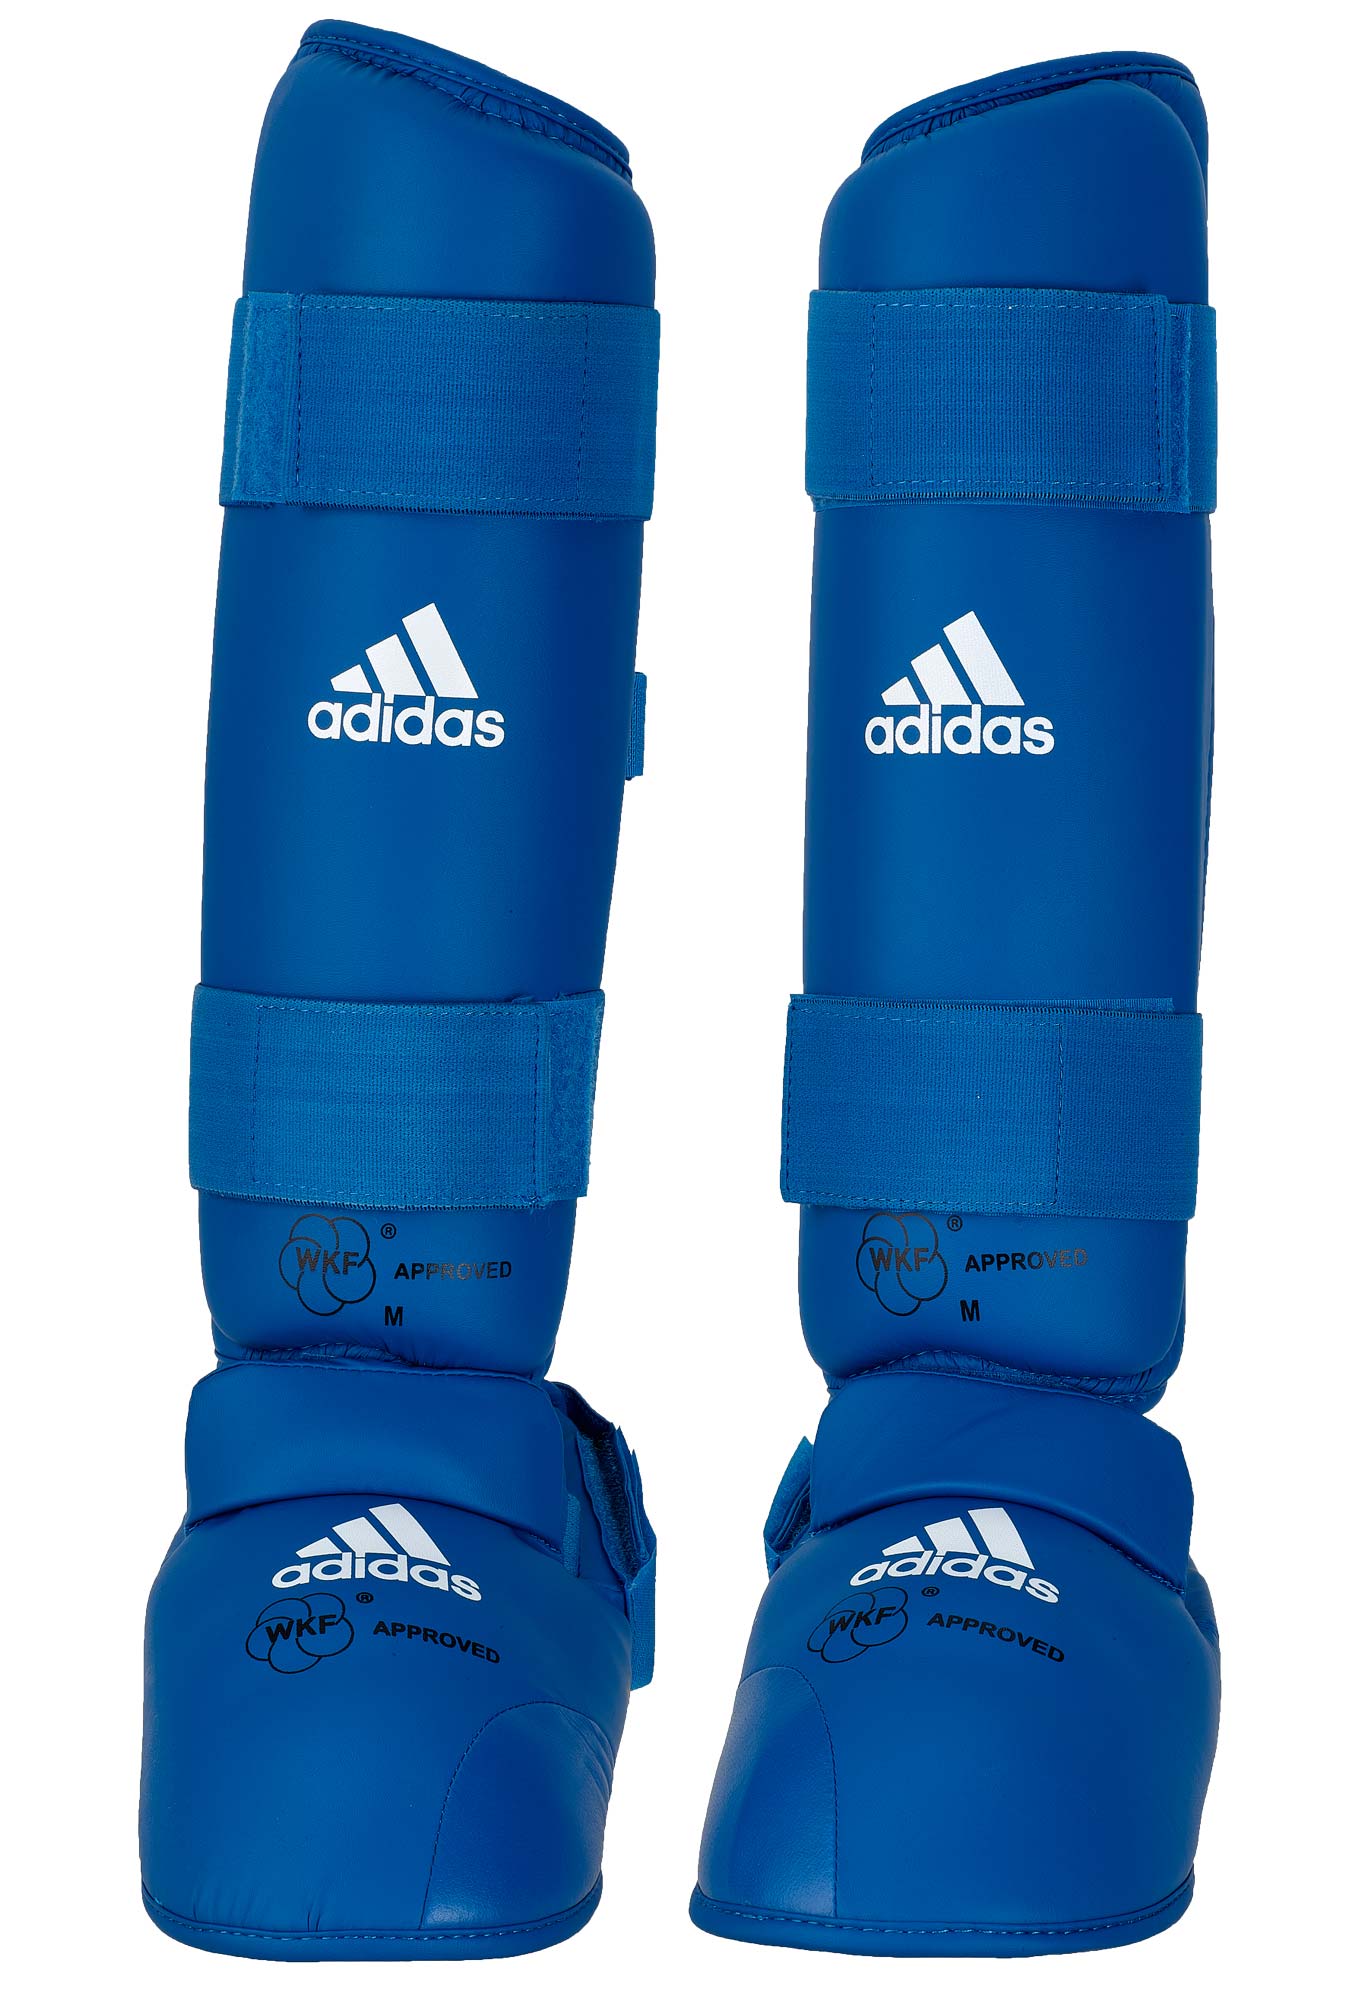 Zumbido Dando Ocho Espinillera c/n empeine Adidas "WKF" (Azul) – Capital - Dojo Martial Arts